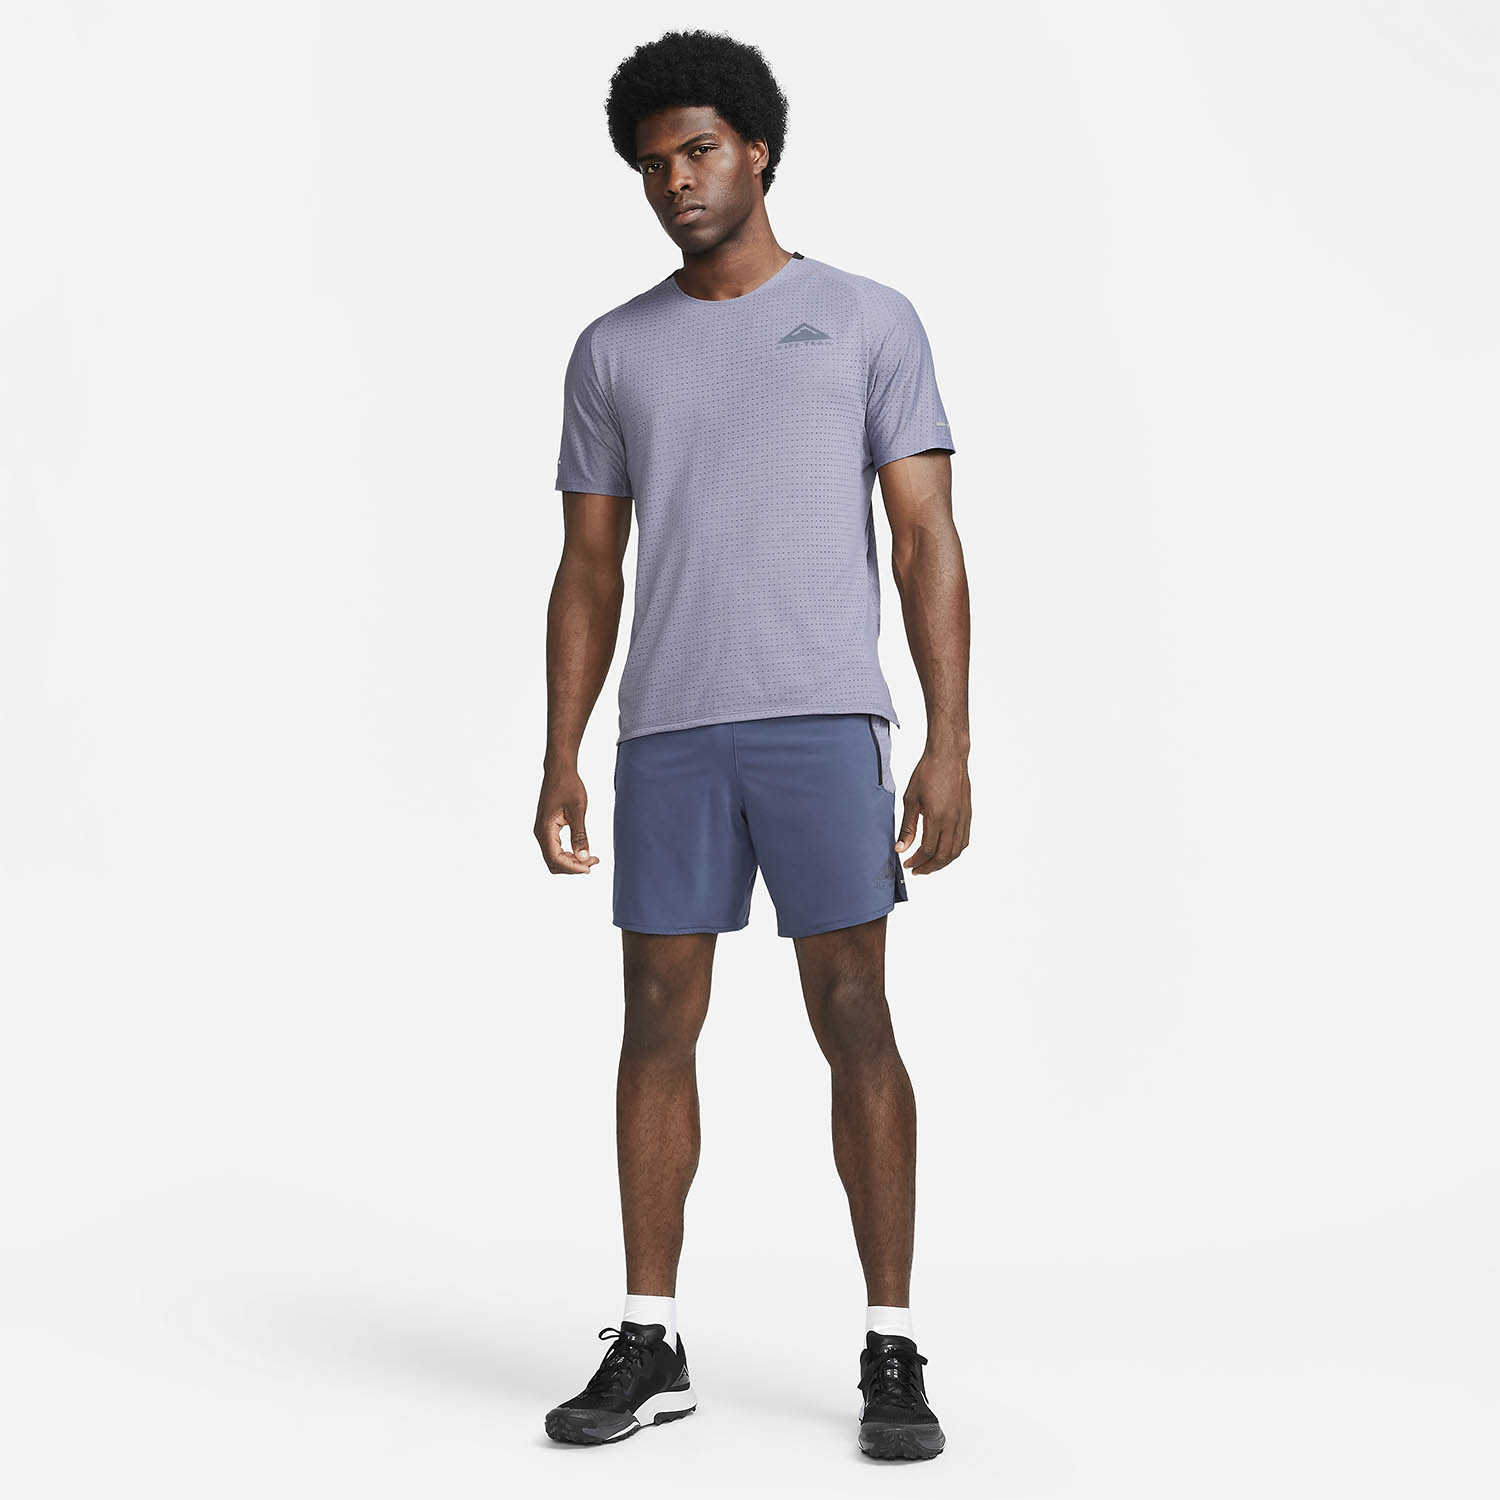 Nike Dri-FIT Solar Chase T-Shirt - Light Carbon/Black